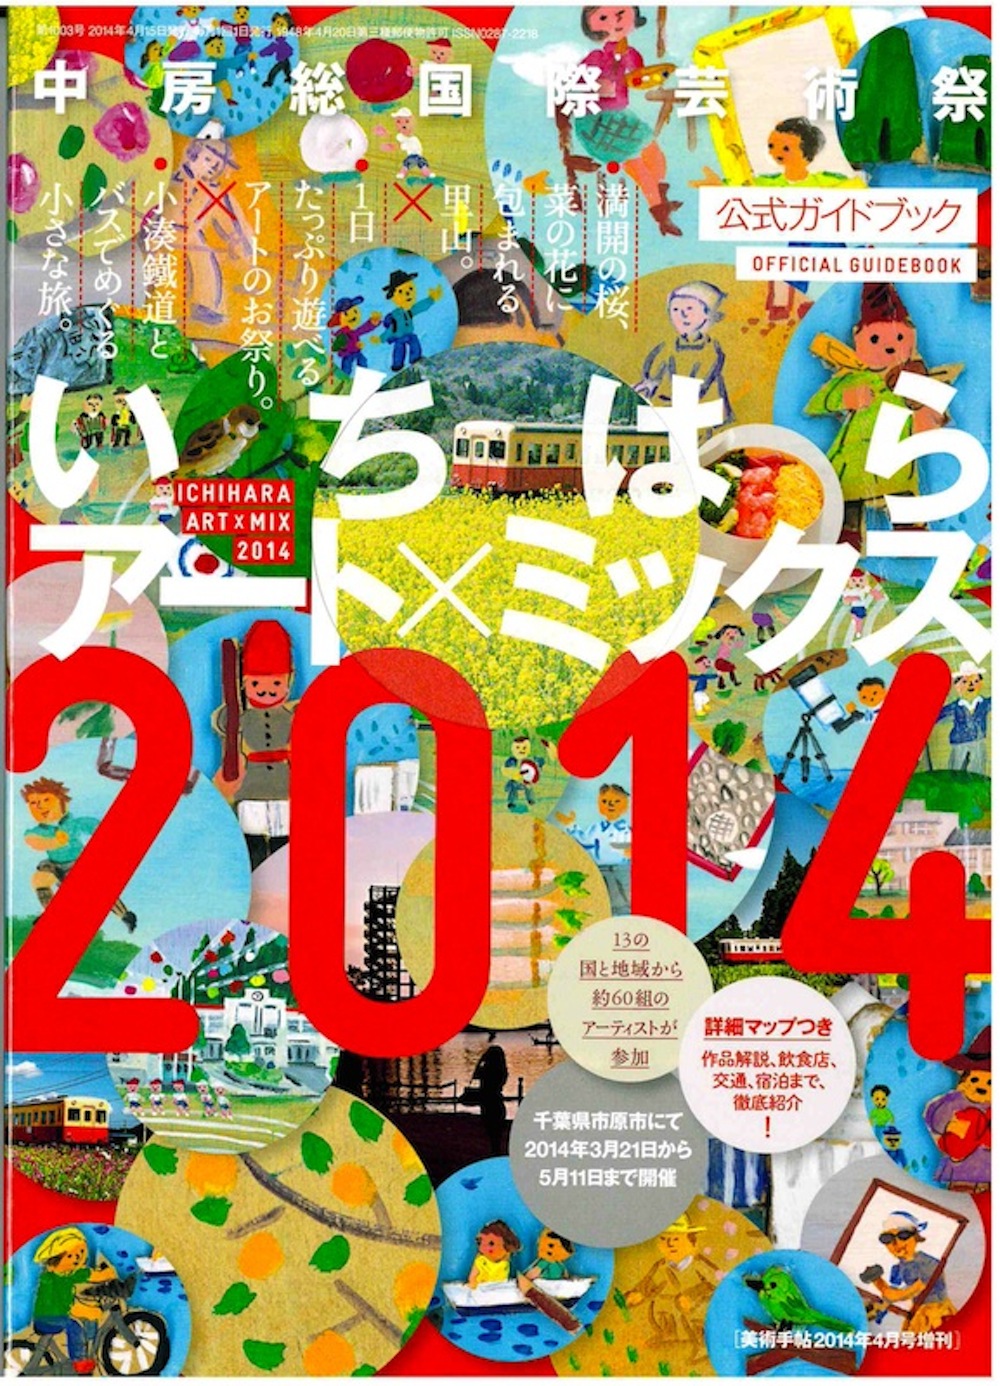 中房総国際芸術祭いちはらアート×ミックス2014公式ガイドブック